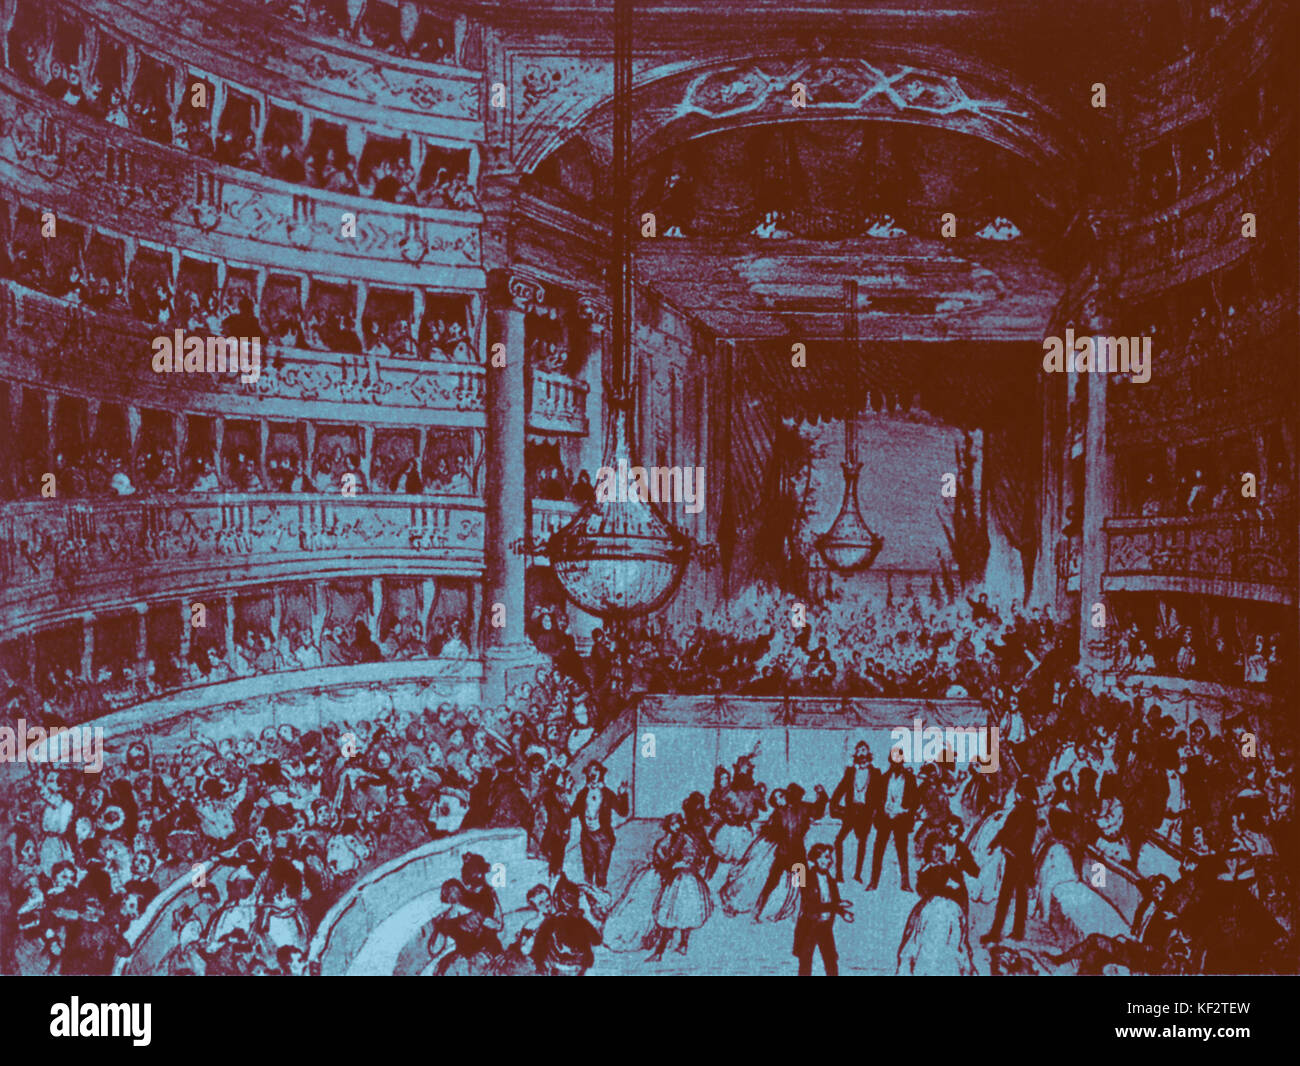 Mailand - Carcano Theater Innenraum-Ball statt, 1803. Verdis La battaglia di Legnano 1859 hier uraufgeführt, Donizettis Anna Bolena hier im Jahre 1830 uraufgeführt. Stockfoto